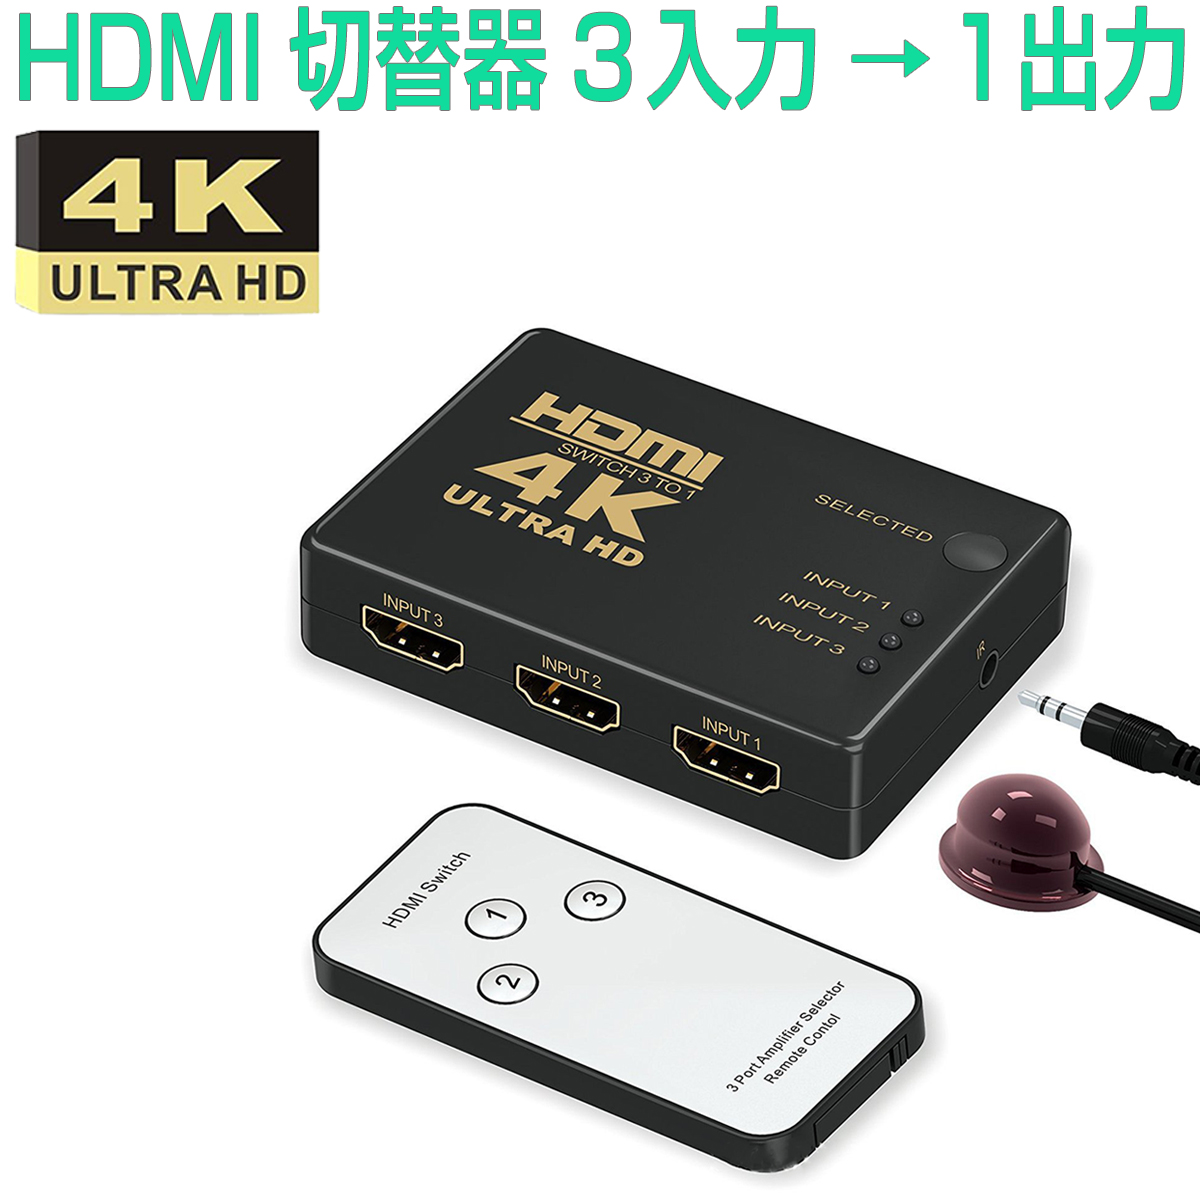 品質は非常に良い HDMI 切替器1出力 3入力 4K対応 ケーブル 分配器 電源不要 接続